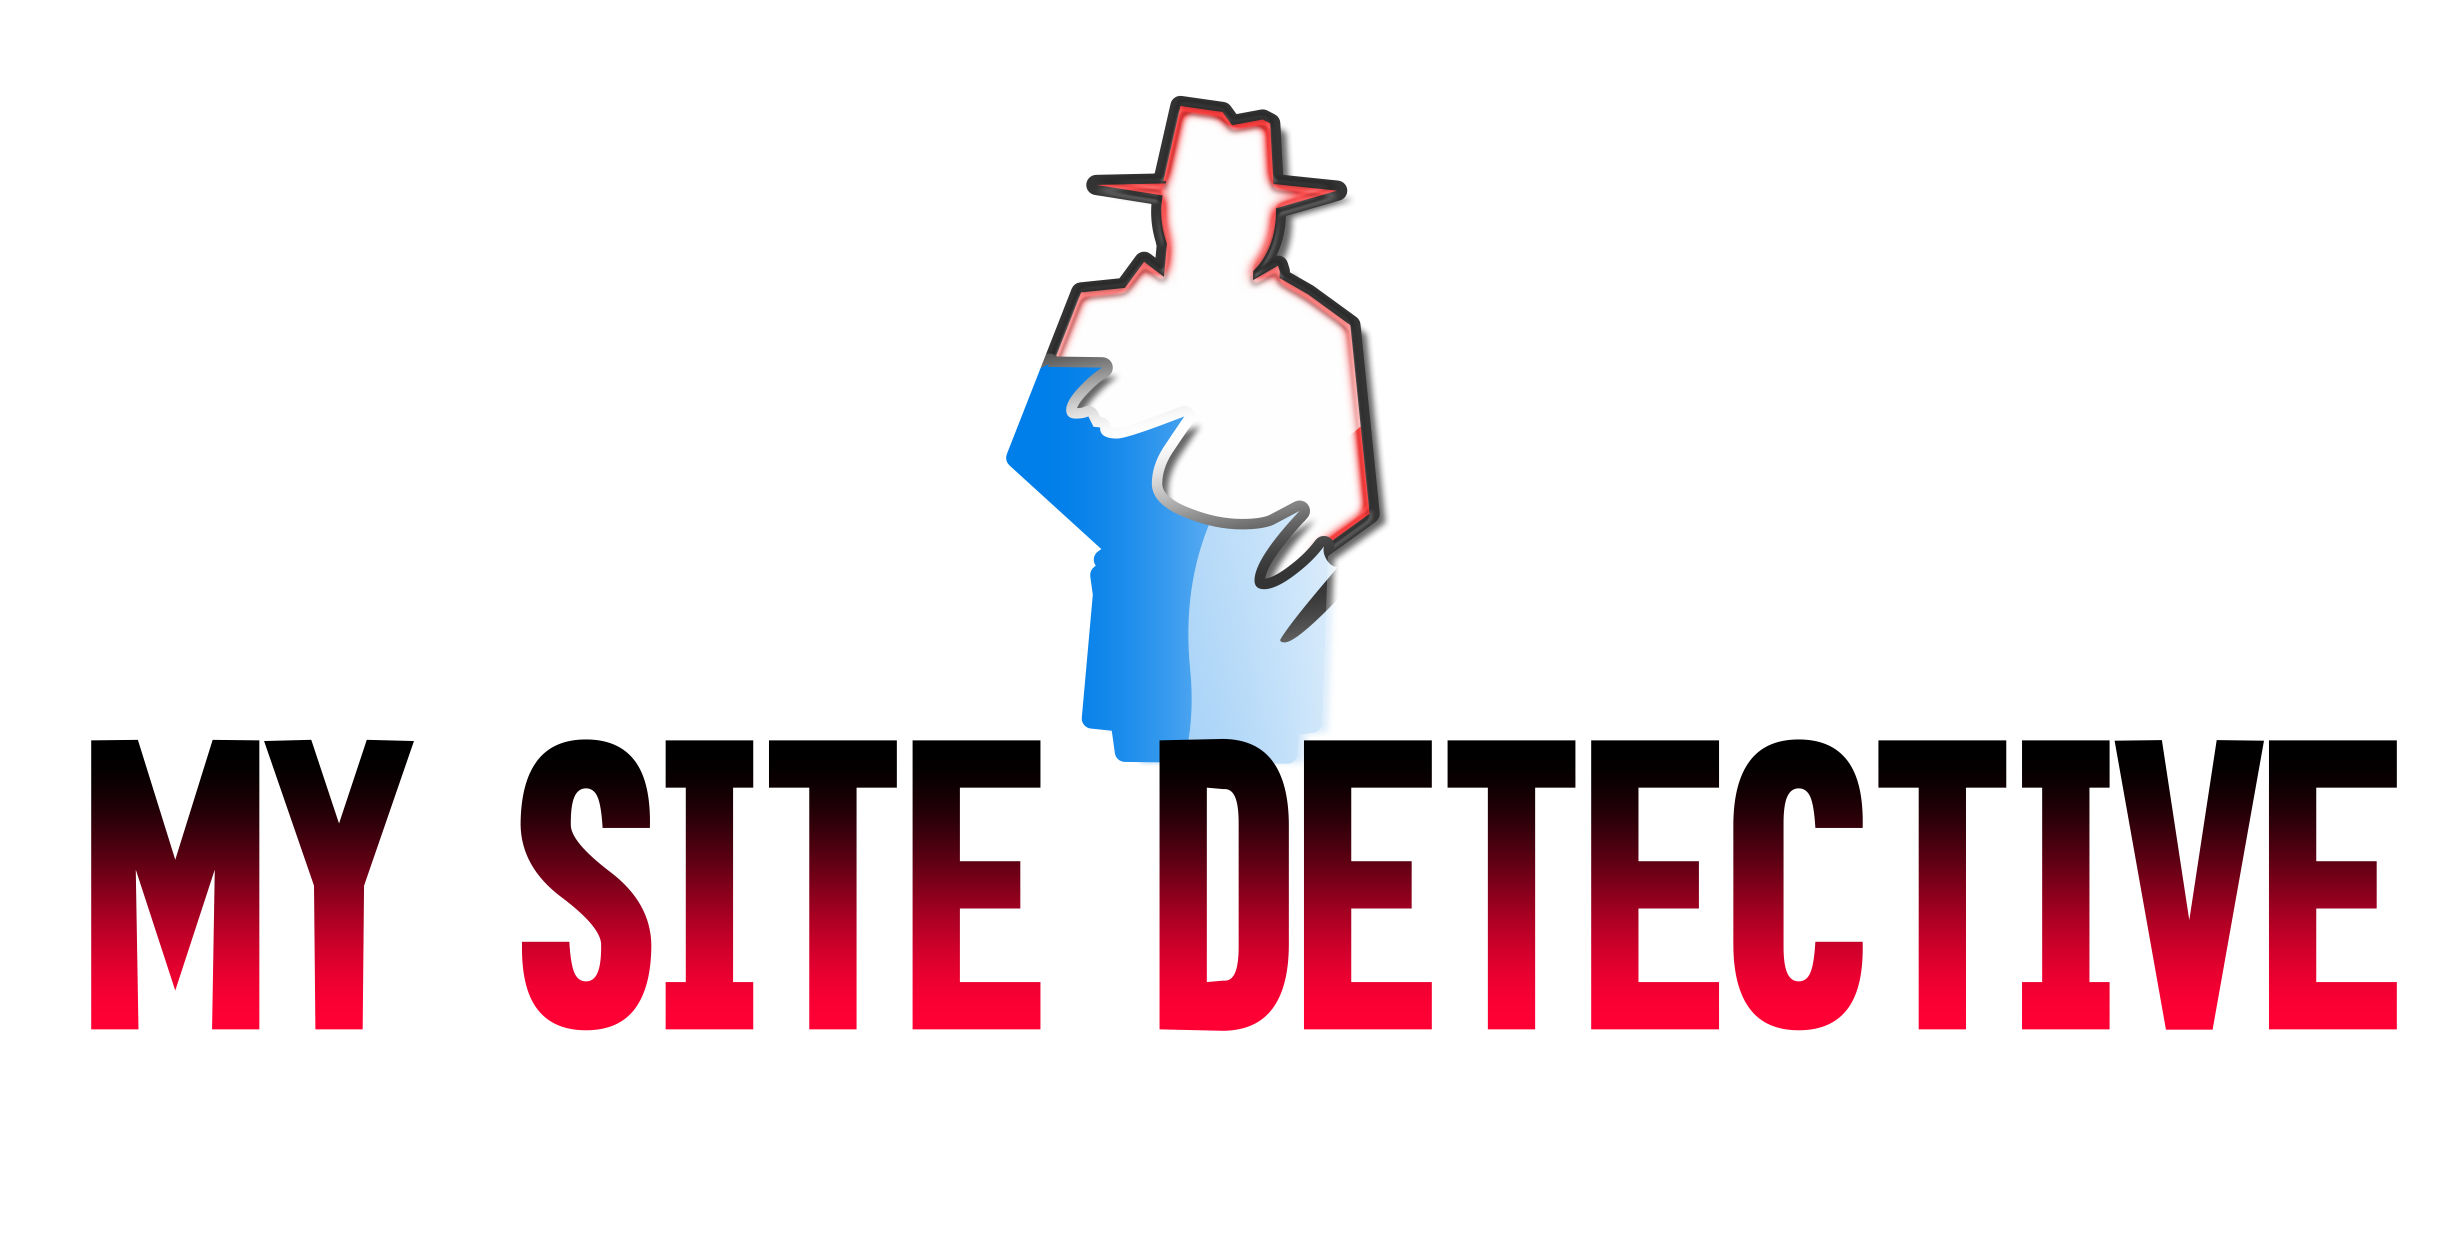 My Site Detective logo